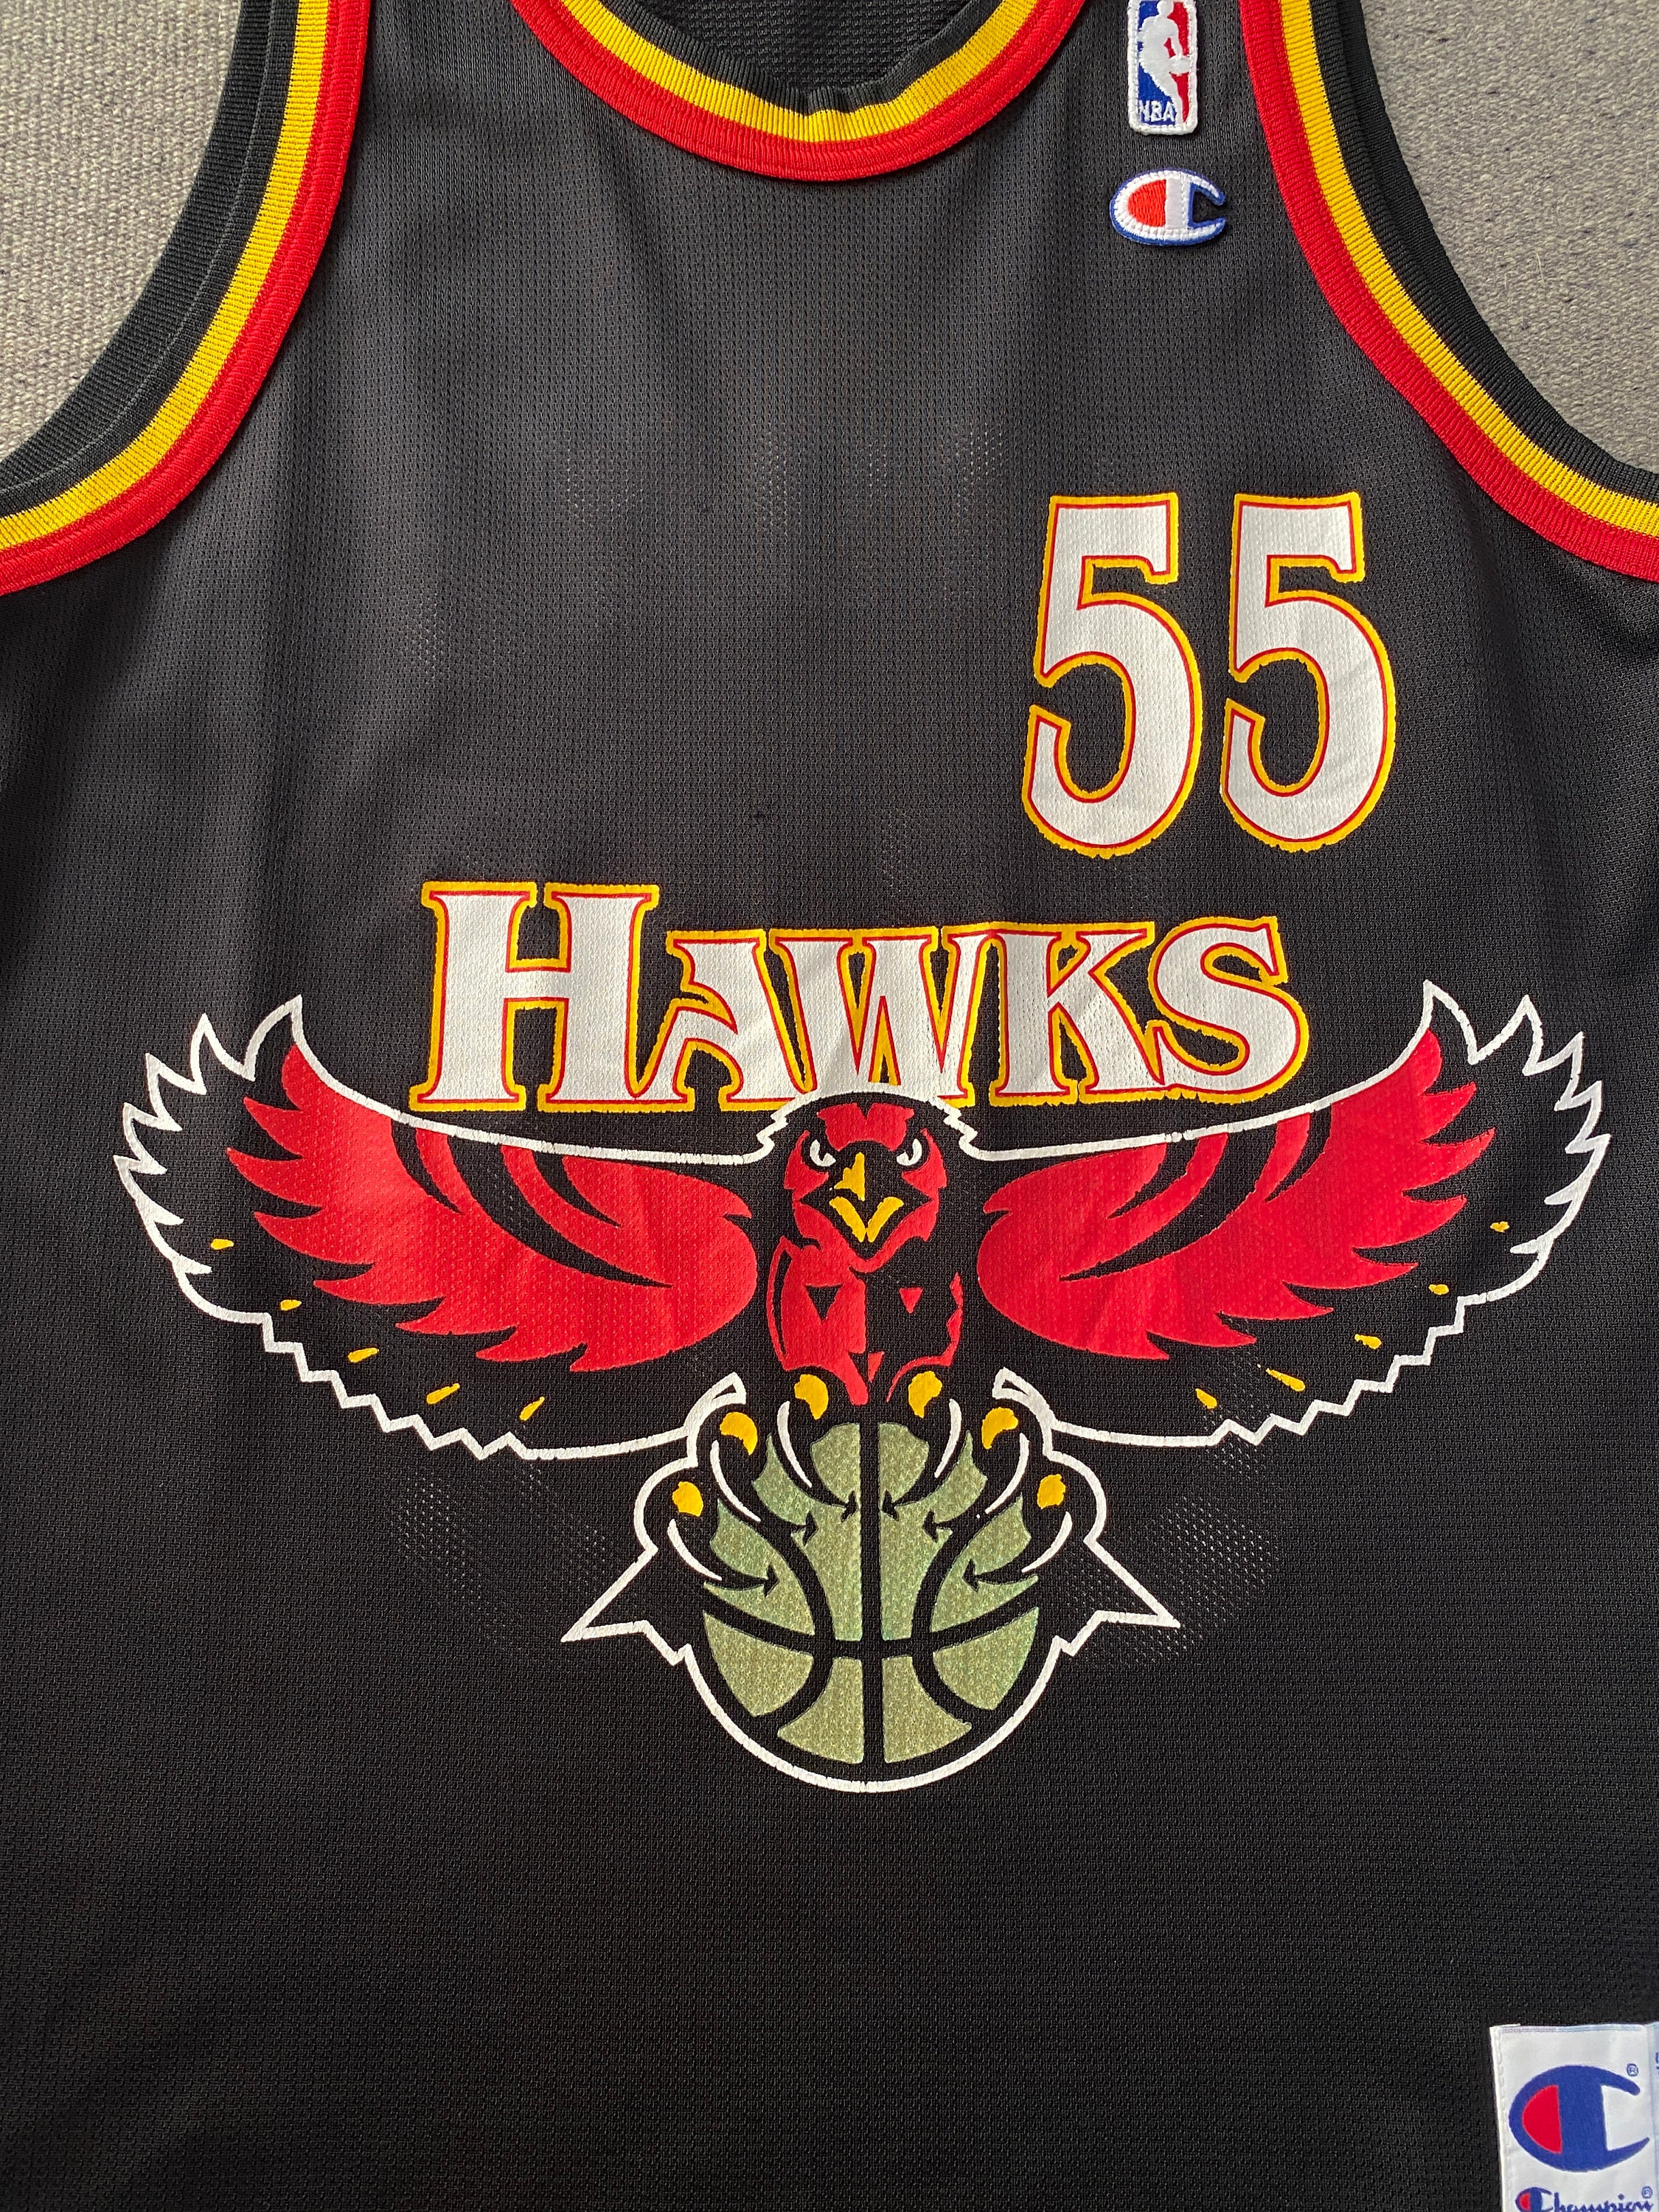 2001 Dikembe Mutombo Philadelphia 76ers Sixers NBA Jersey Size 44 Large –  Rare VNTG